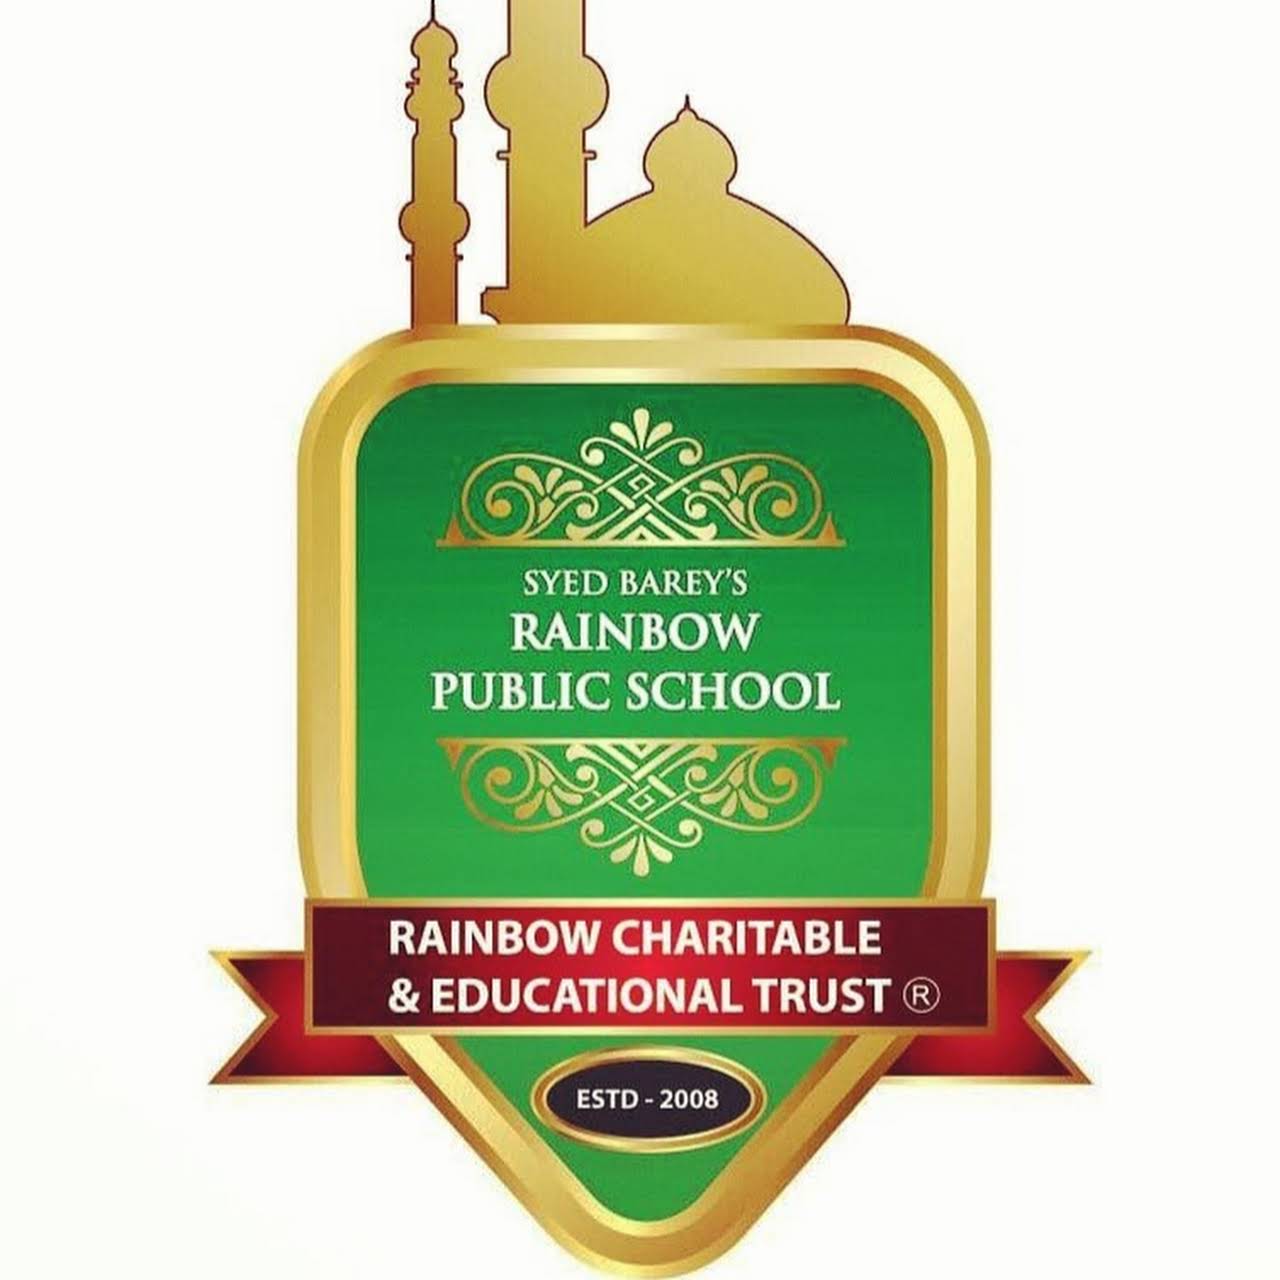 Syed barey's Rainbow Public School - Logo